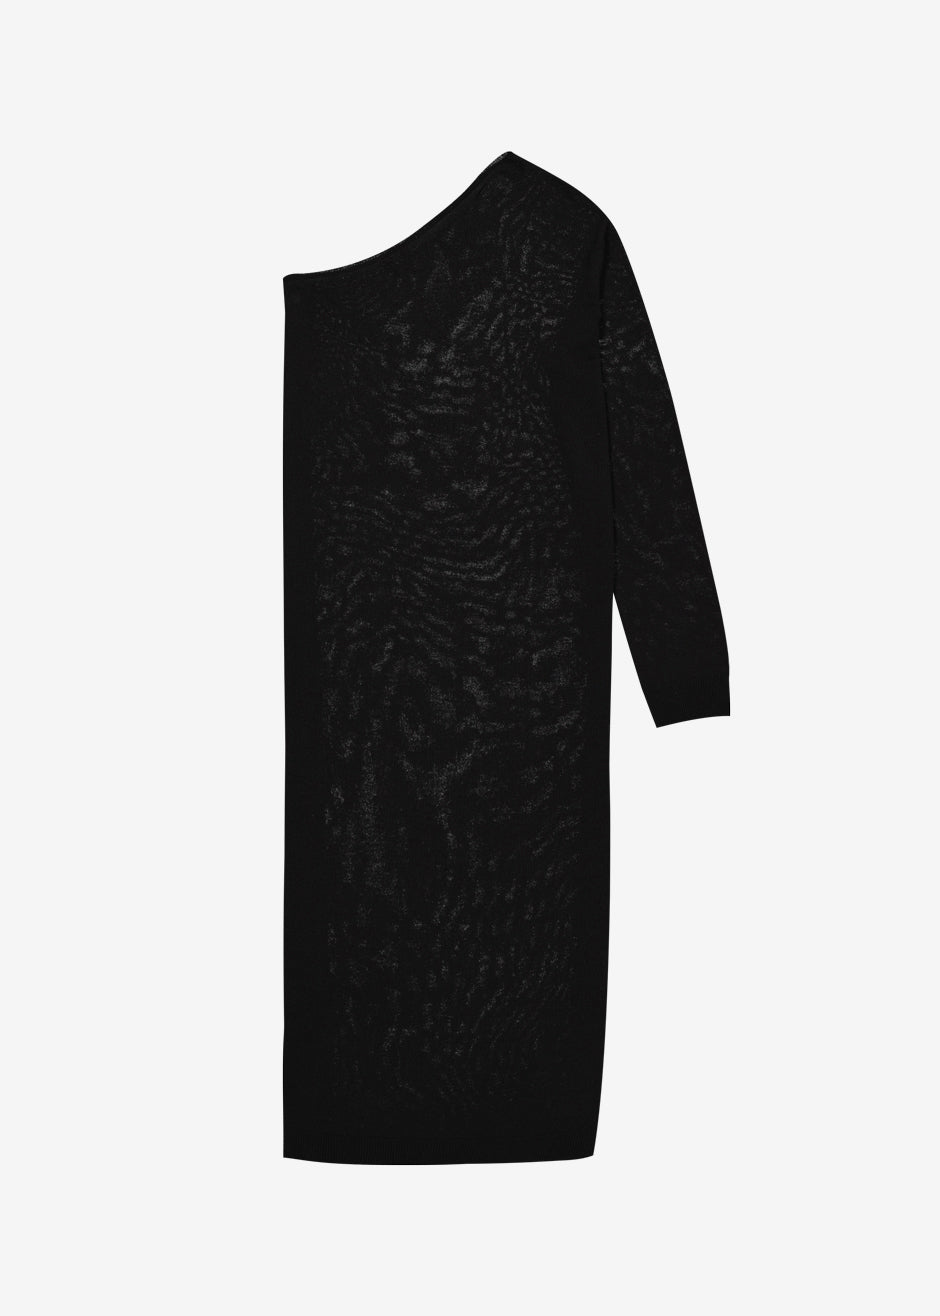 Lina One Shoulder Loose Knit Dress - Black - 9